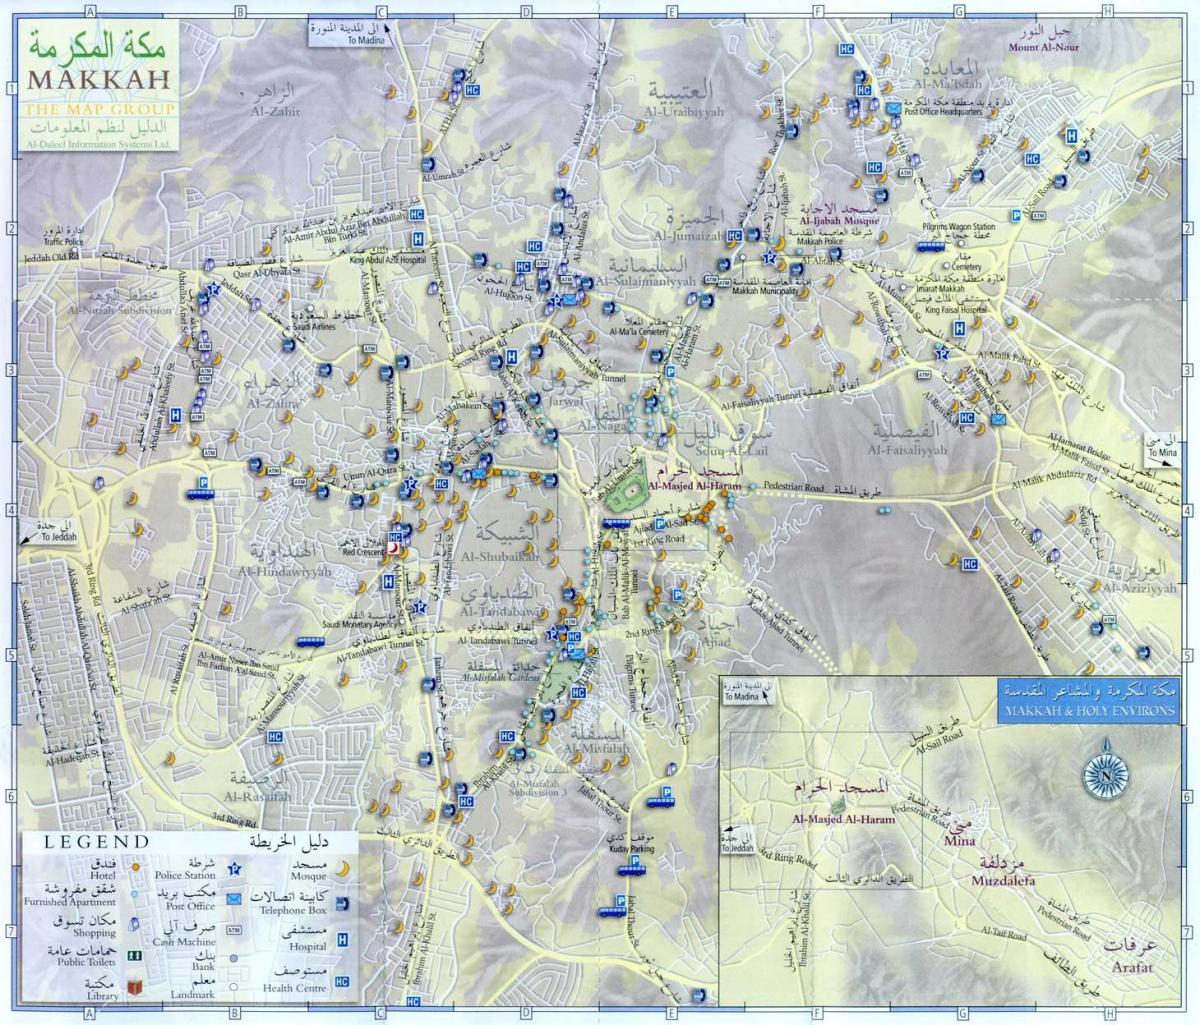  नक्शा मक्का के ziyarat स्थानों